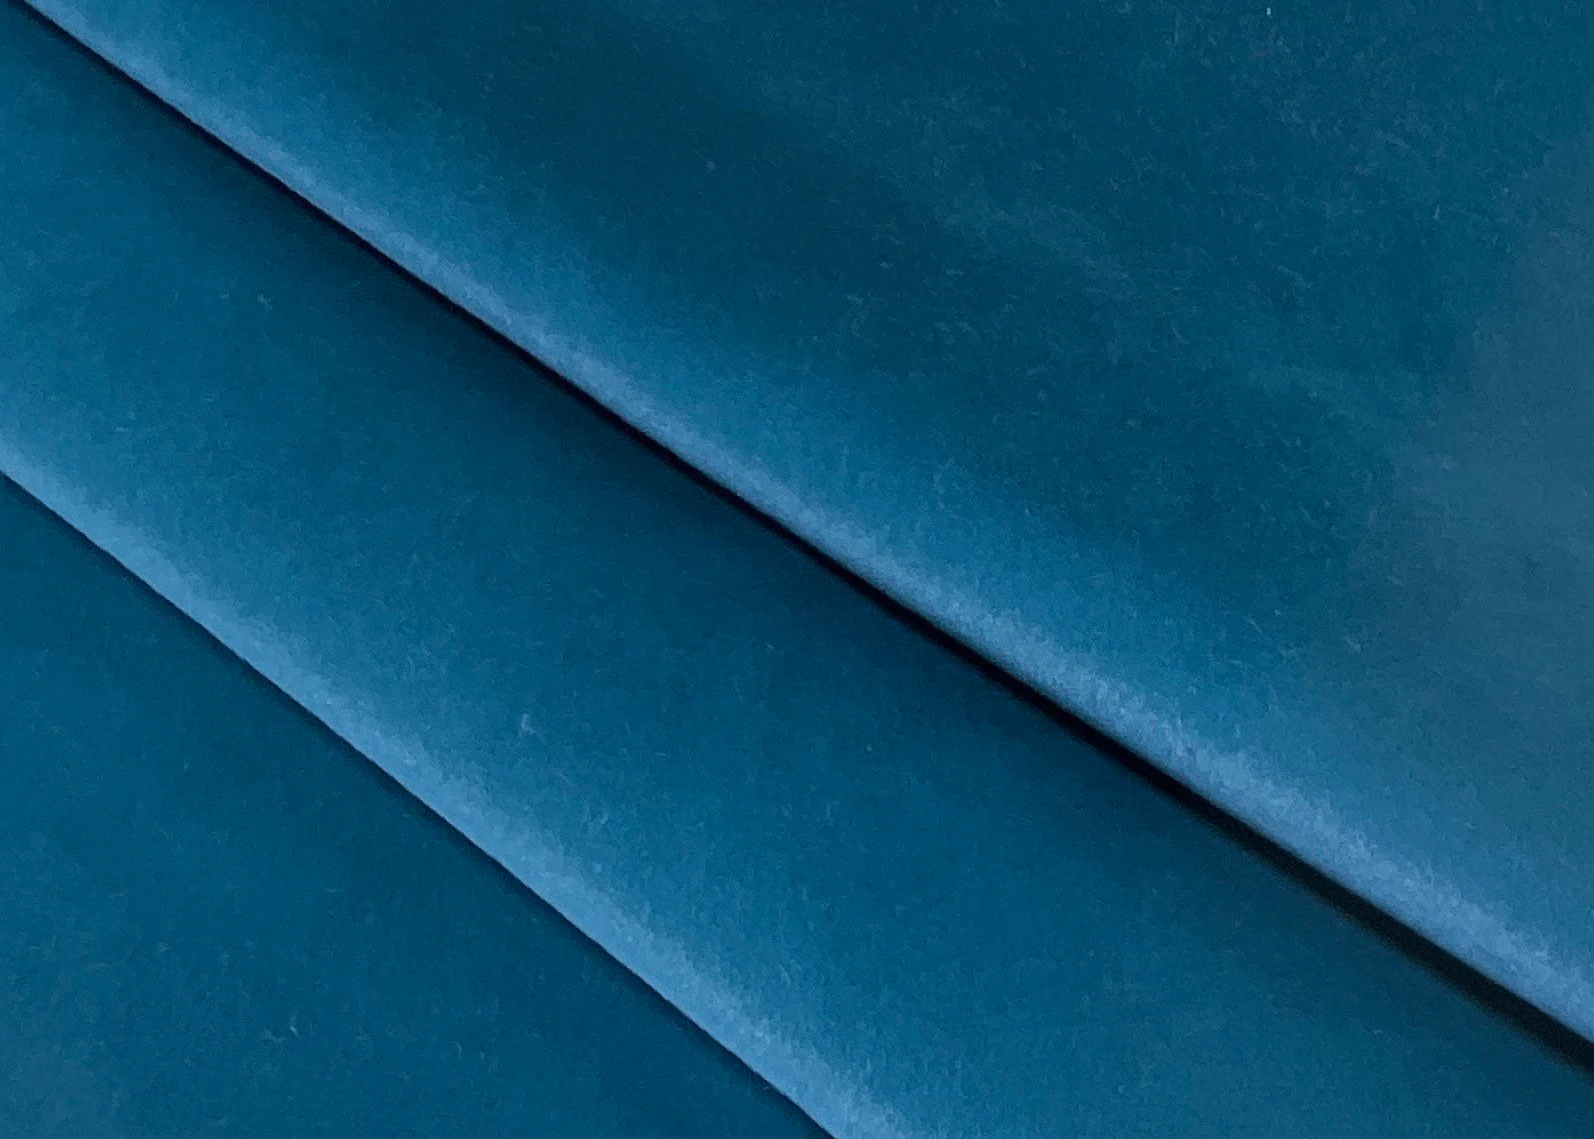 How to clean velvet upholstery?
